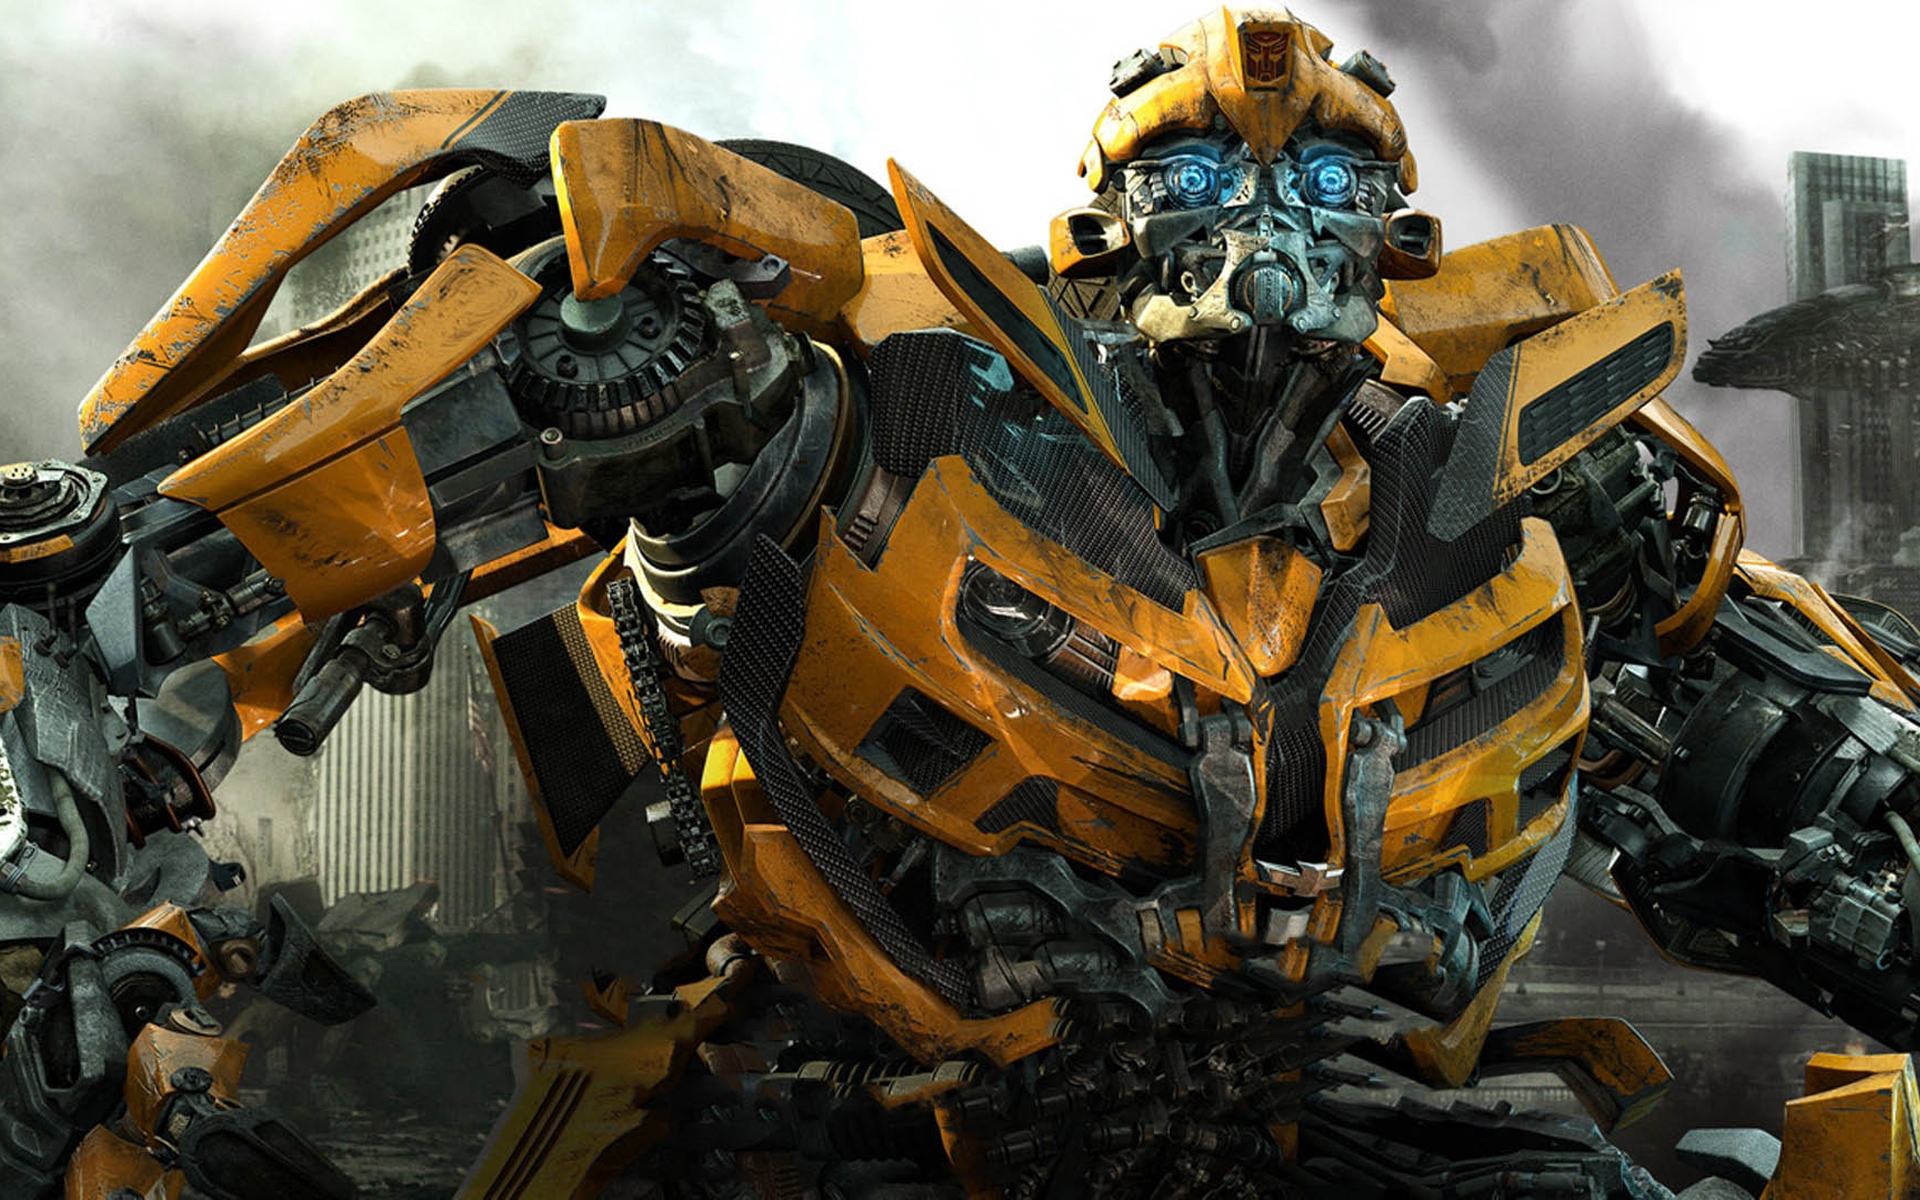 Transformers: O Despertar das Feras  Novo filme da franquia ganha título;  Optimus Prime é confirmado na trama - Cinema com Rapadura